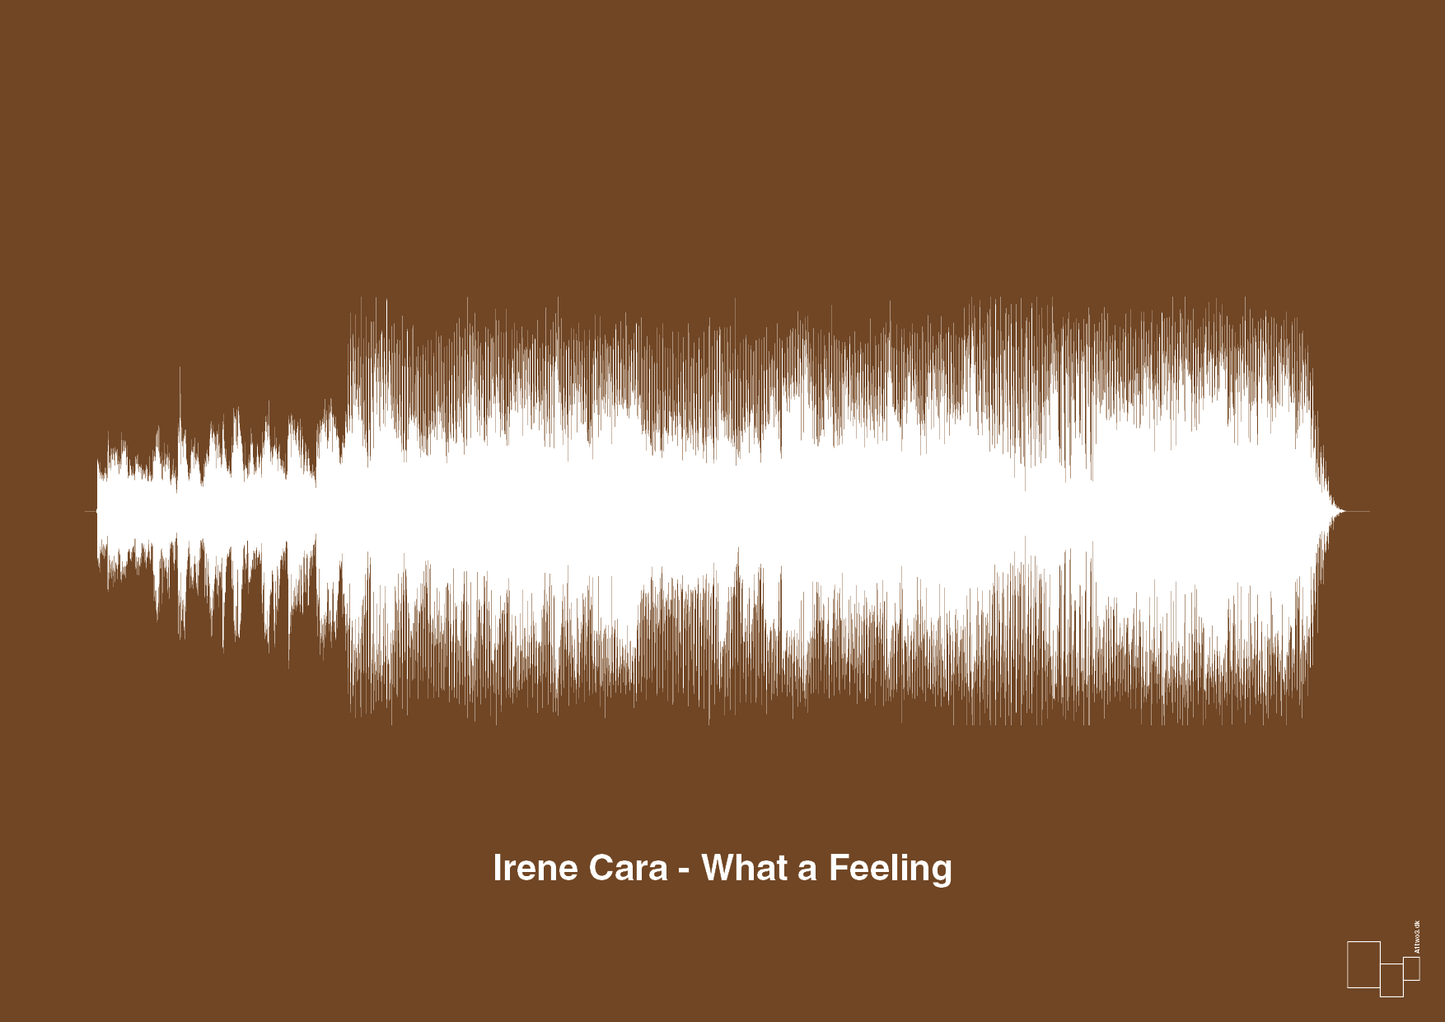 irene cara - what a feeling - Plakat med Musik i Dark Brown